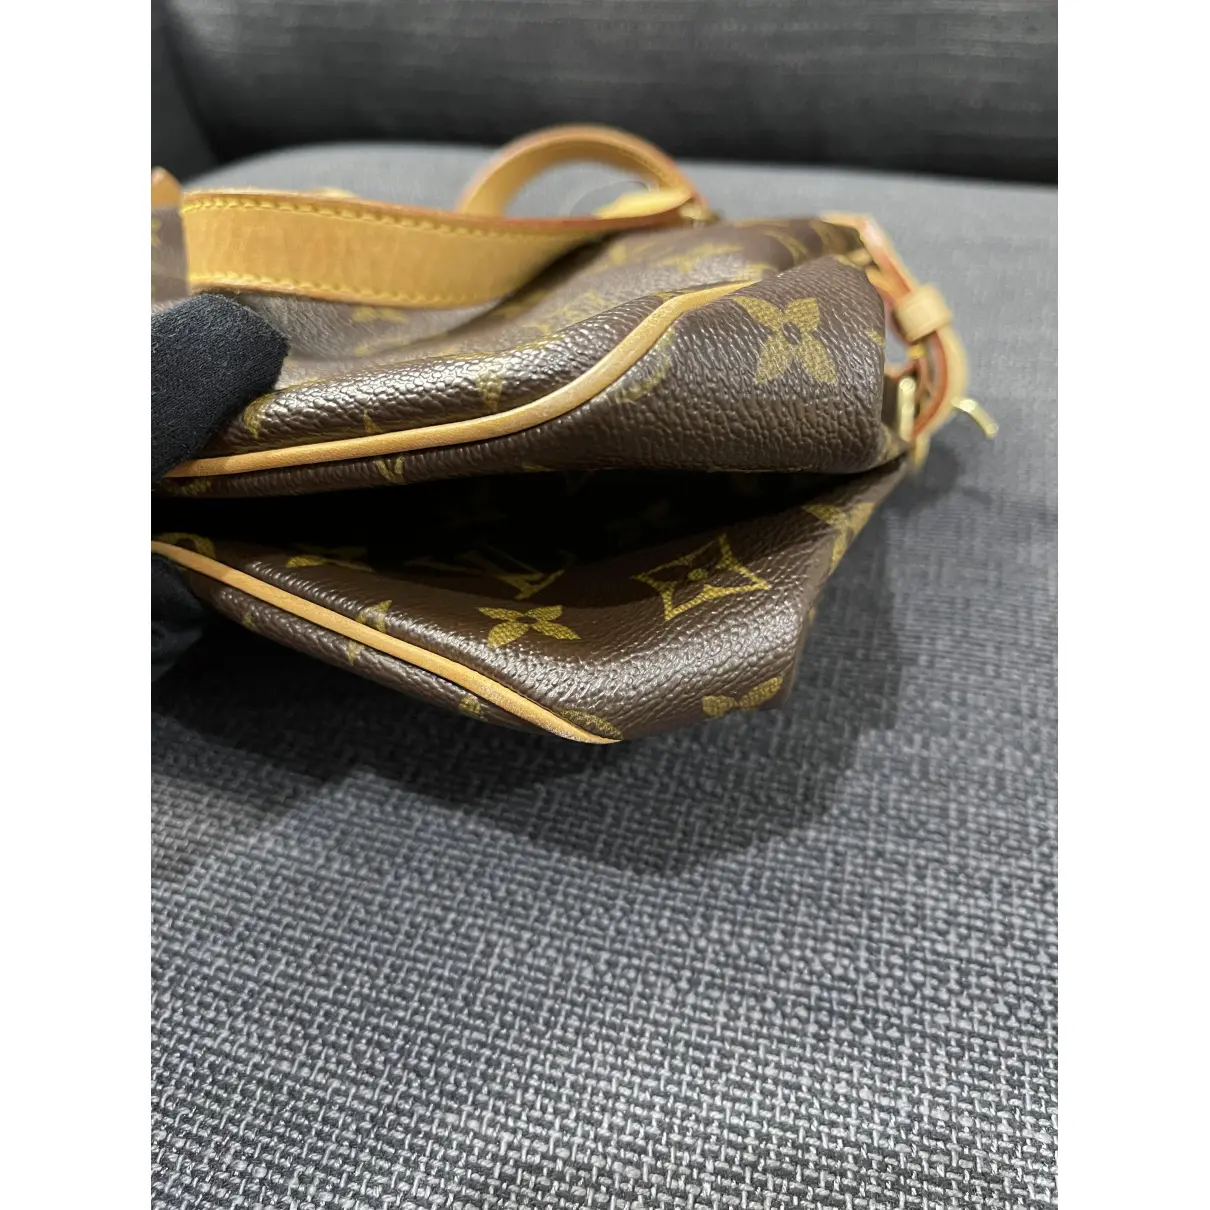 Batignolles cloth handbag Louis Vuitton